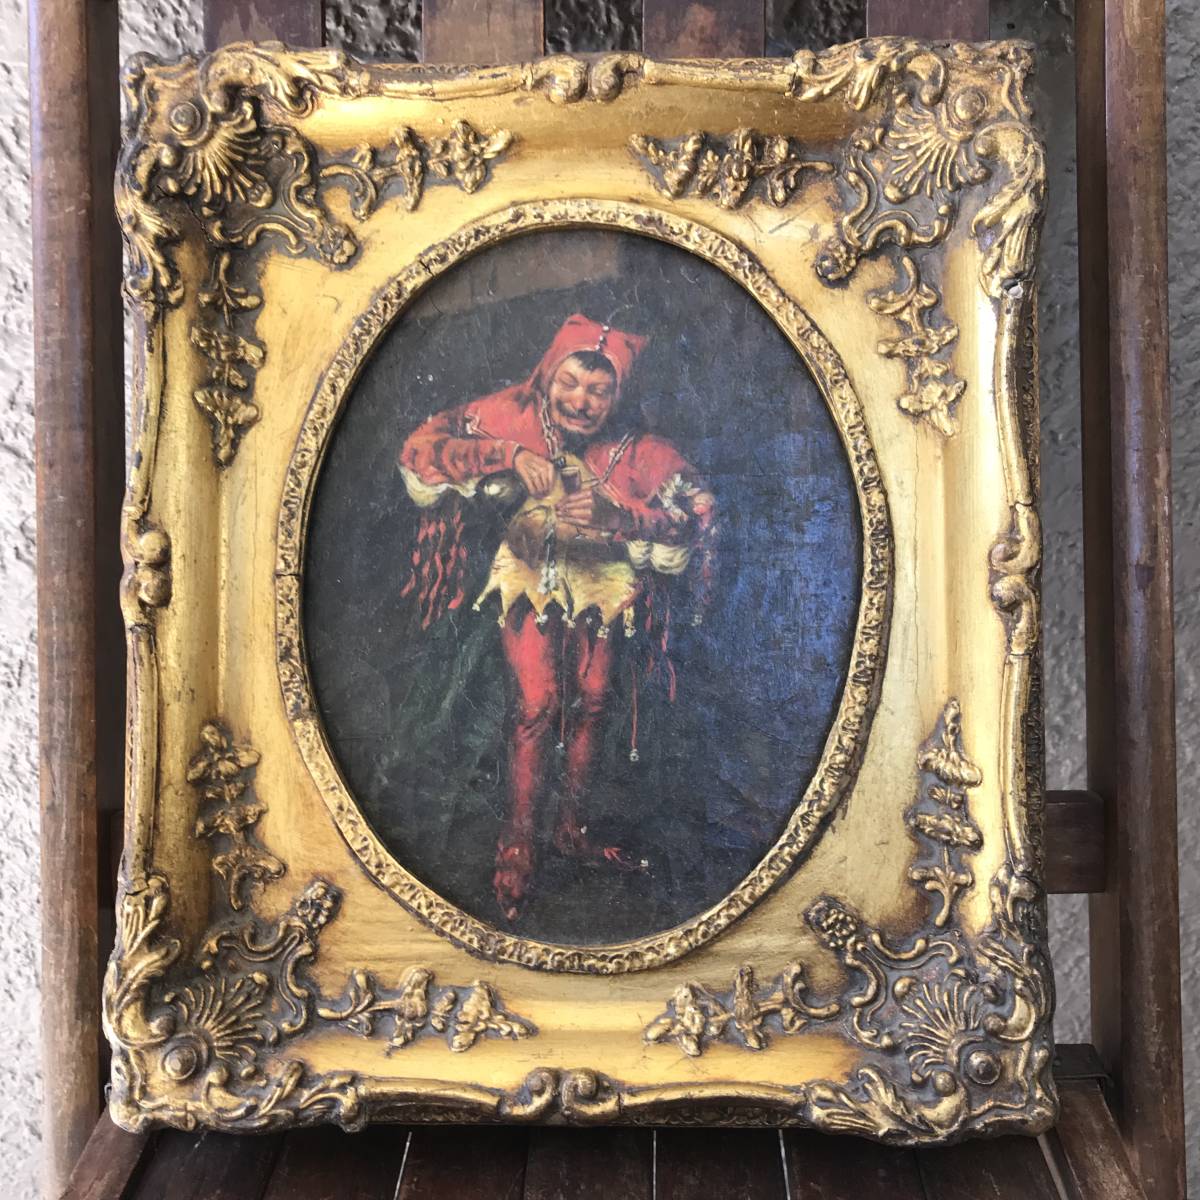 दुर्लभ वस्तु! बहुत पुरानी 19वीं सदी की प्राचीन पेंटिंग ऑयल पेंटिंग जेस्टर क्लाउन / इंग्लैंड मध्यकालीन यूरोप यूरोप फ्रांस पिस्सू बाजार पूर्वी यूरोप जर्मनी विंटेज विविध सामान, चित्रकारी, तैल चित्र, धार्मिक चित्रकारी